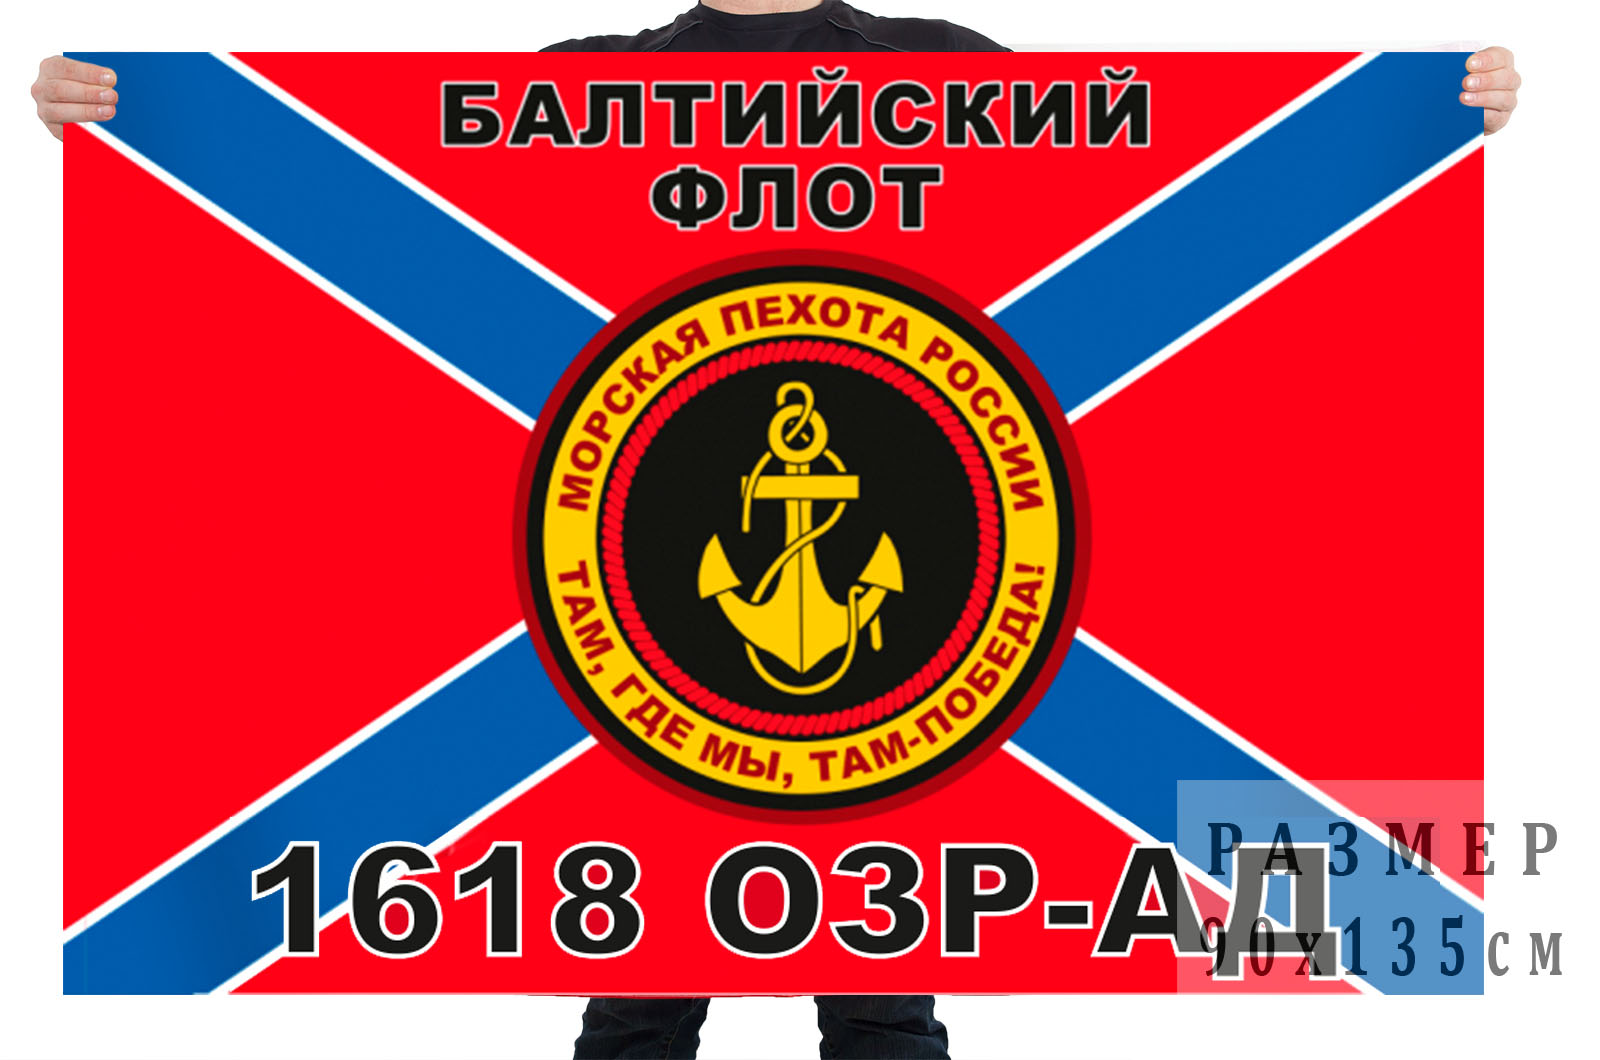 Флаг Мосркой пехоты 1618 ОЗР-АД Балтийский флот